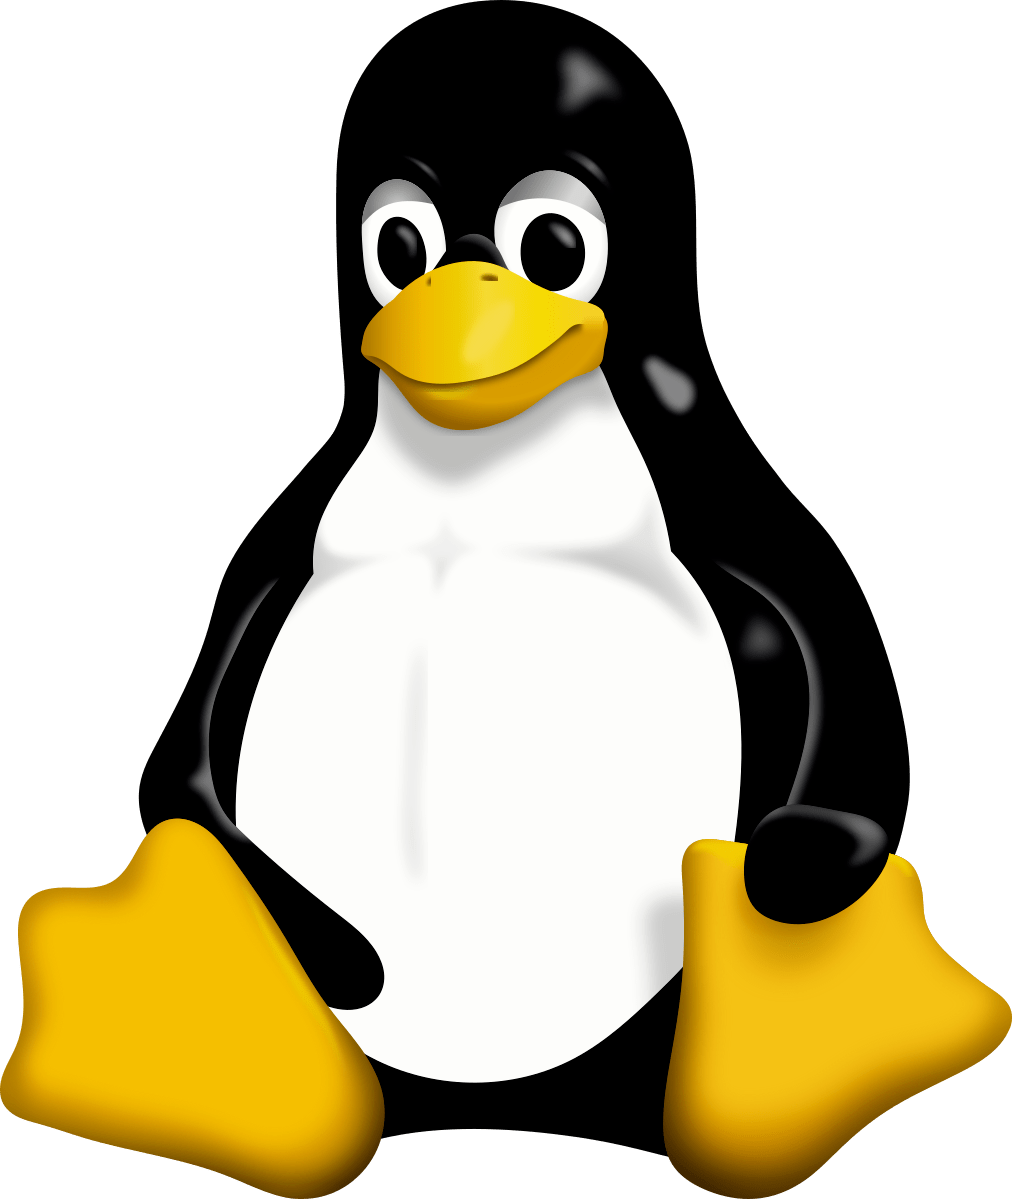 华为智能手机功能
:华为代码加速 Linux 核心功能 715 倍！